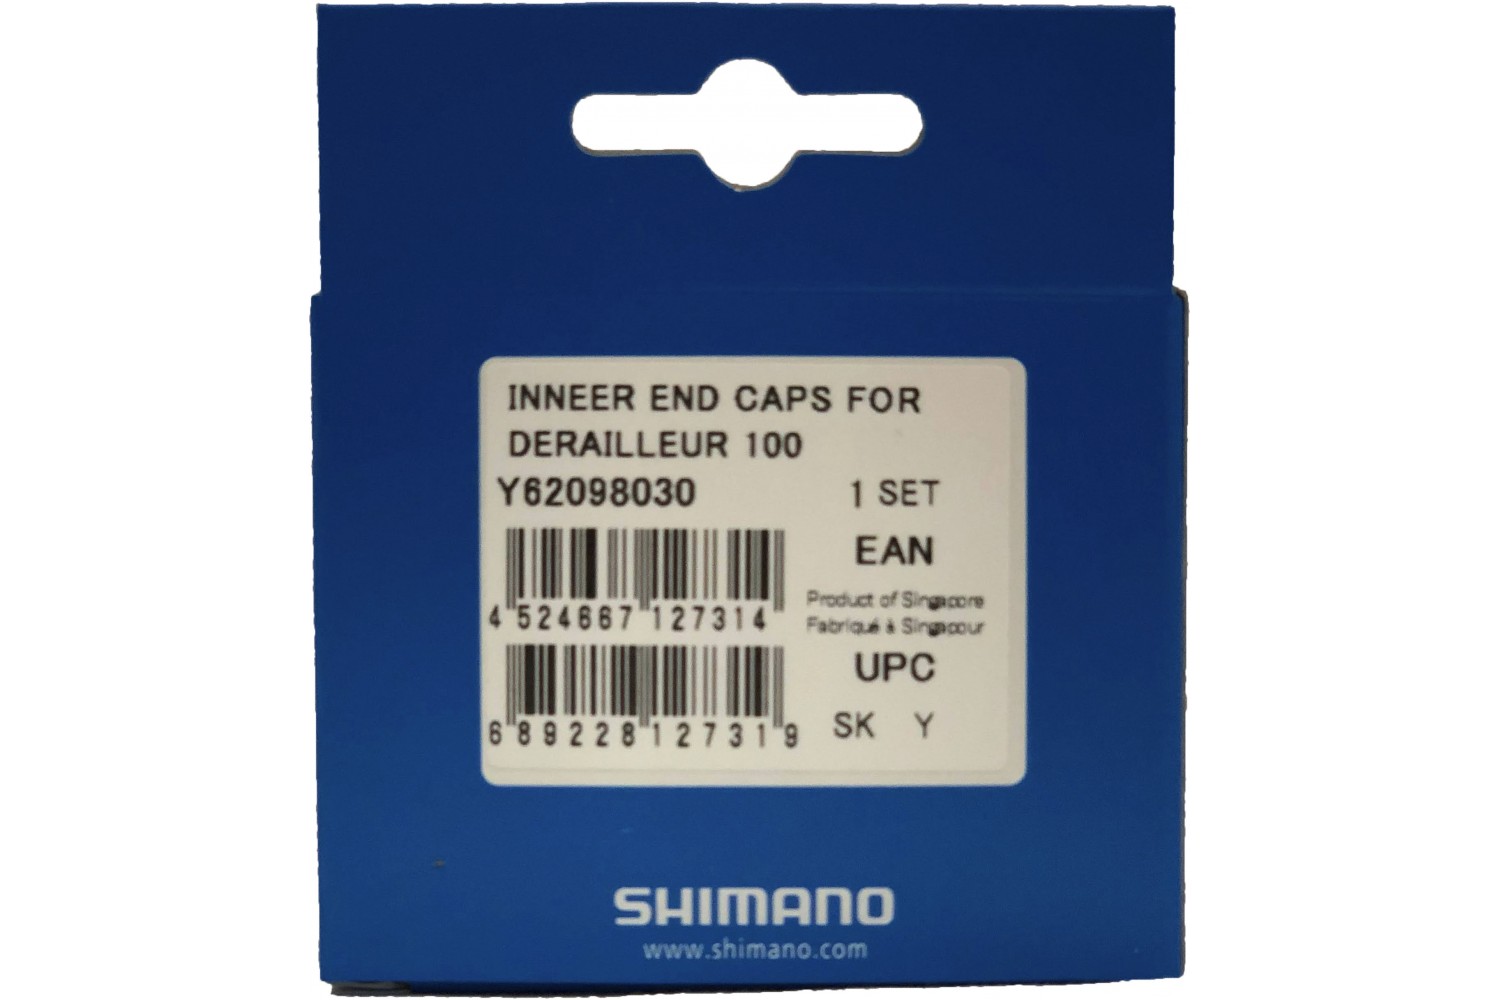  для тросика переключения Shimano Genuine Parts (Y62098030 .